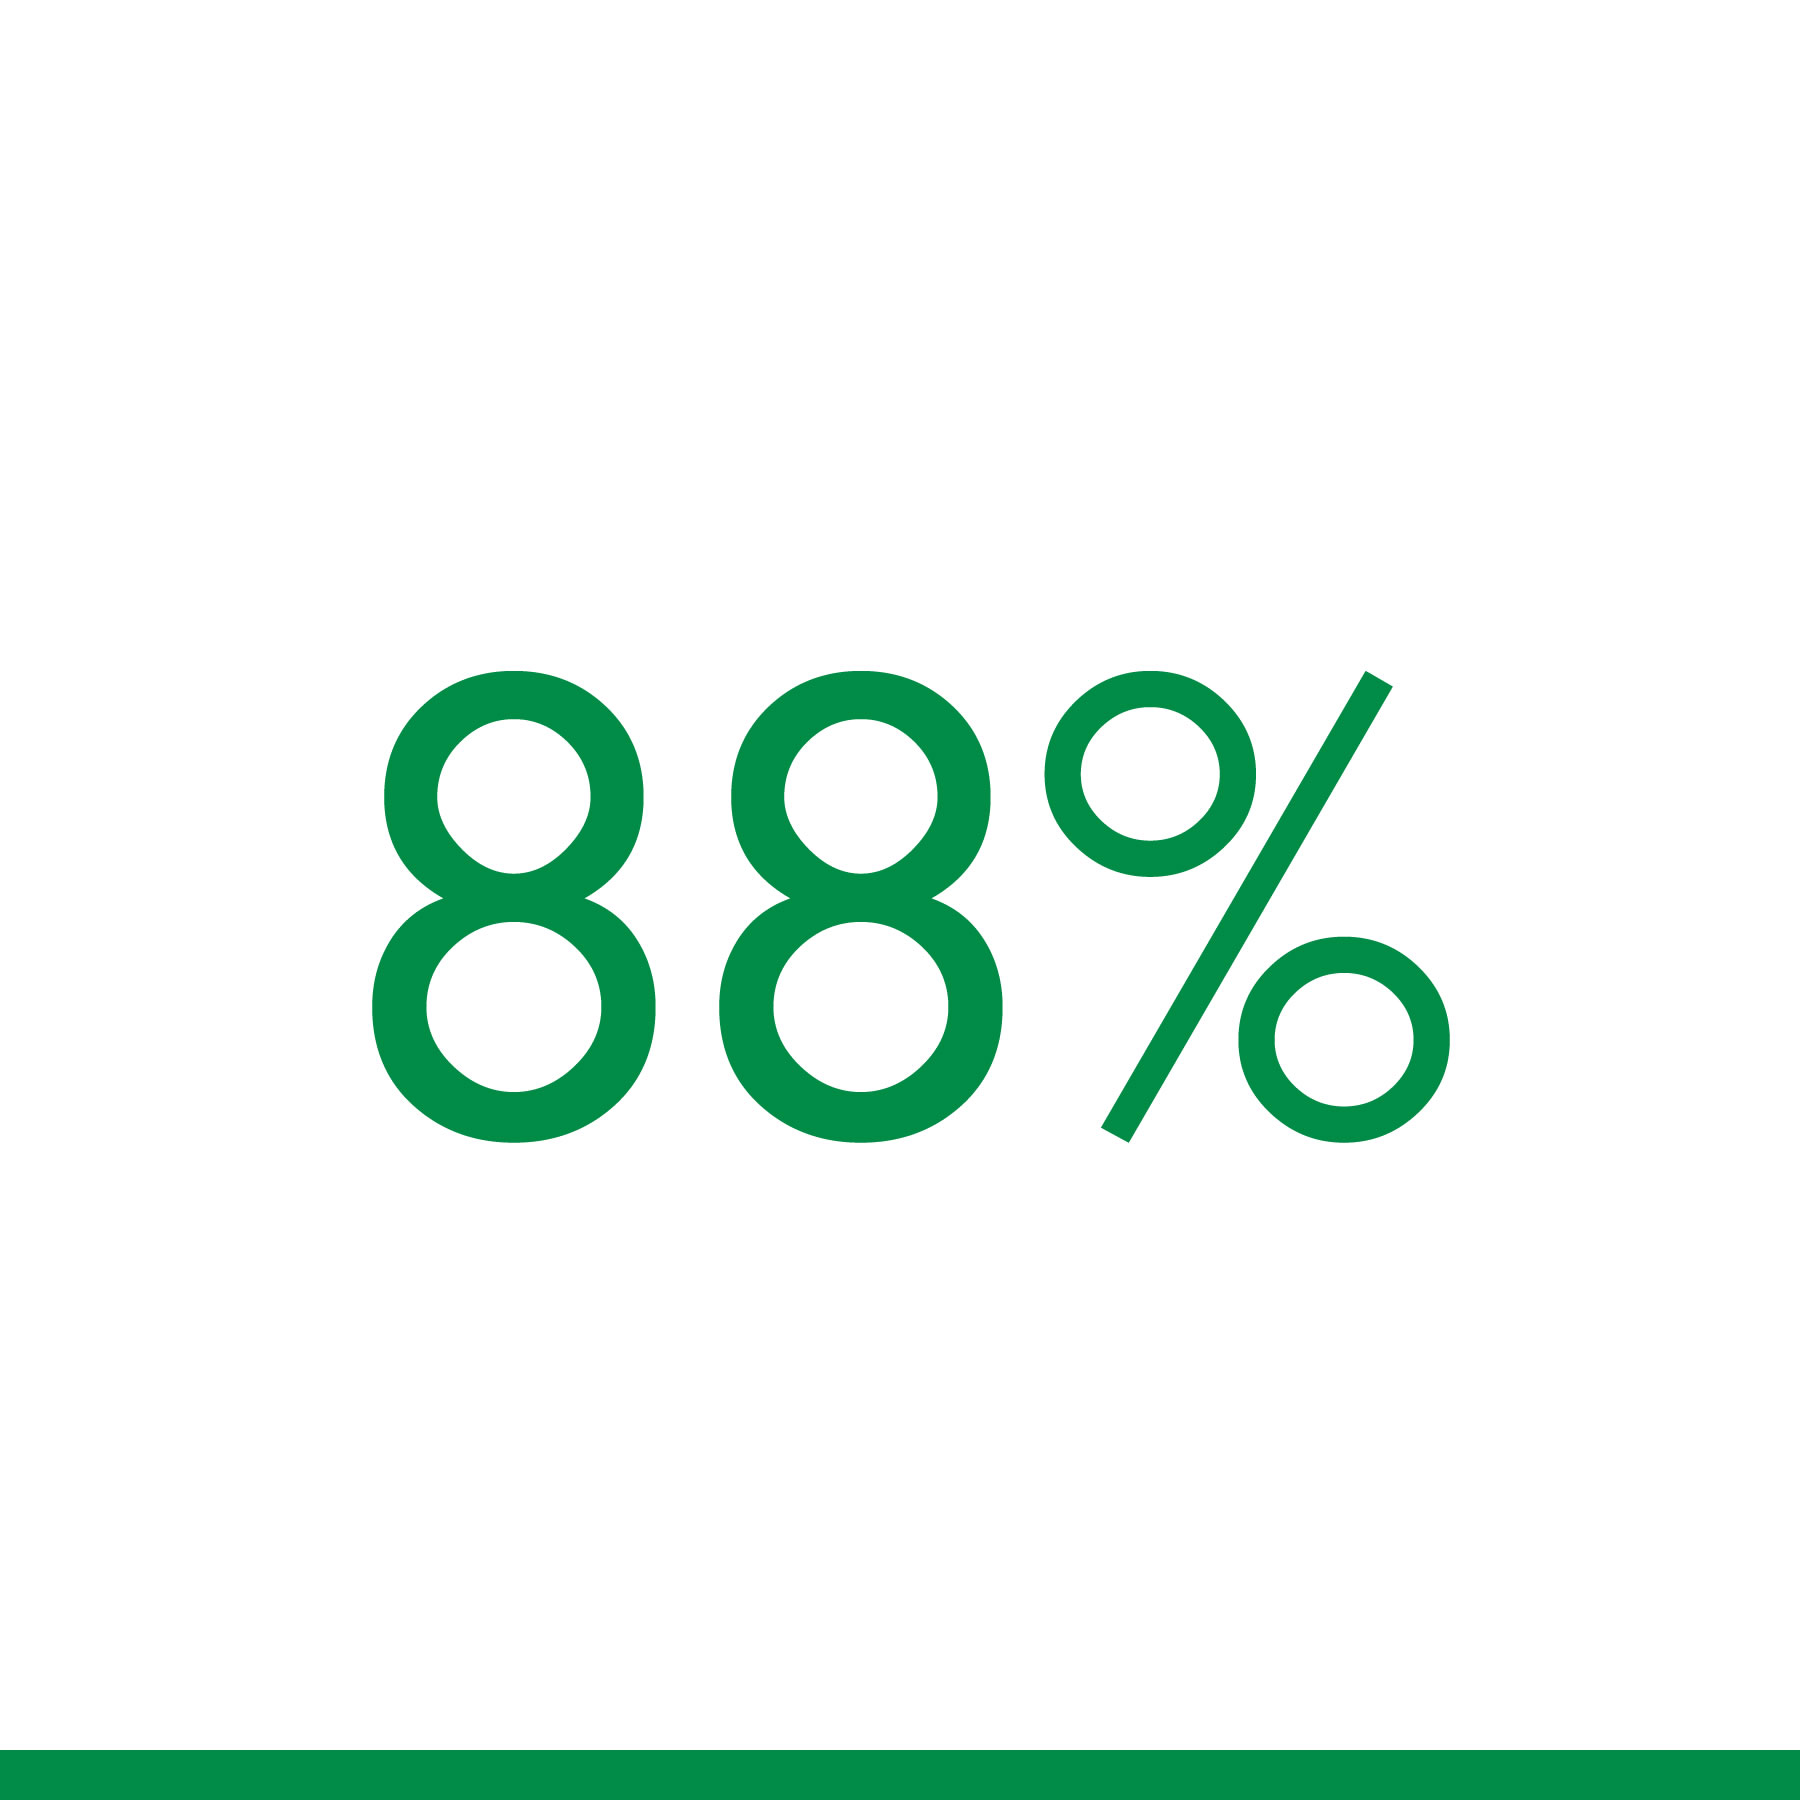 88 Percent